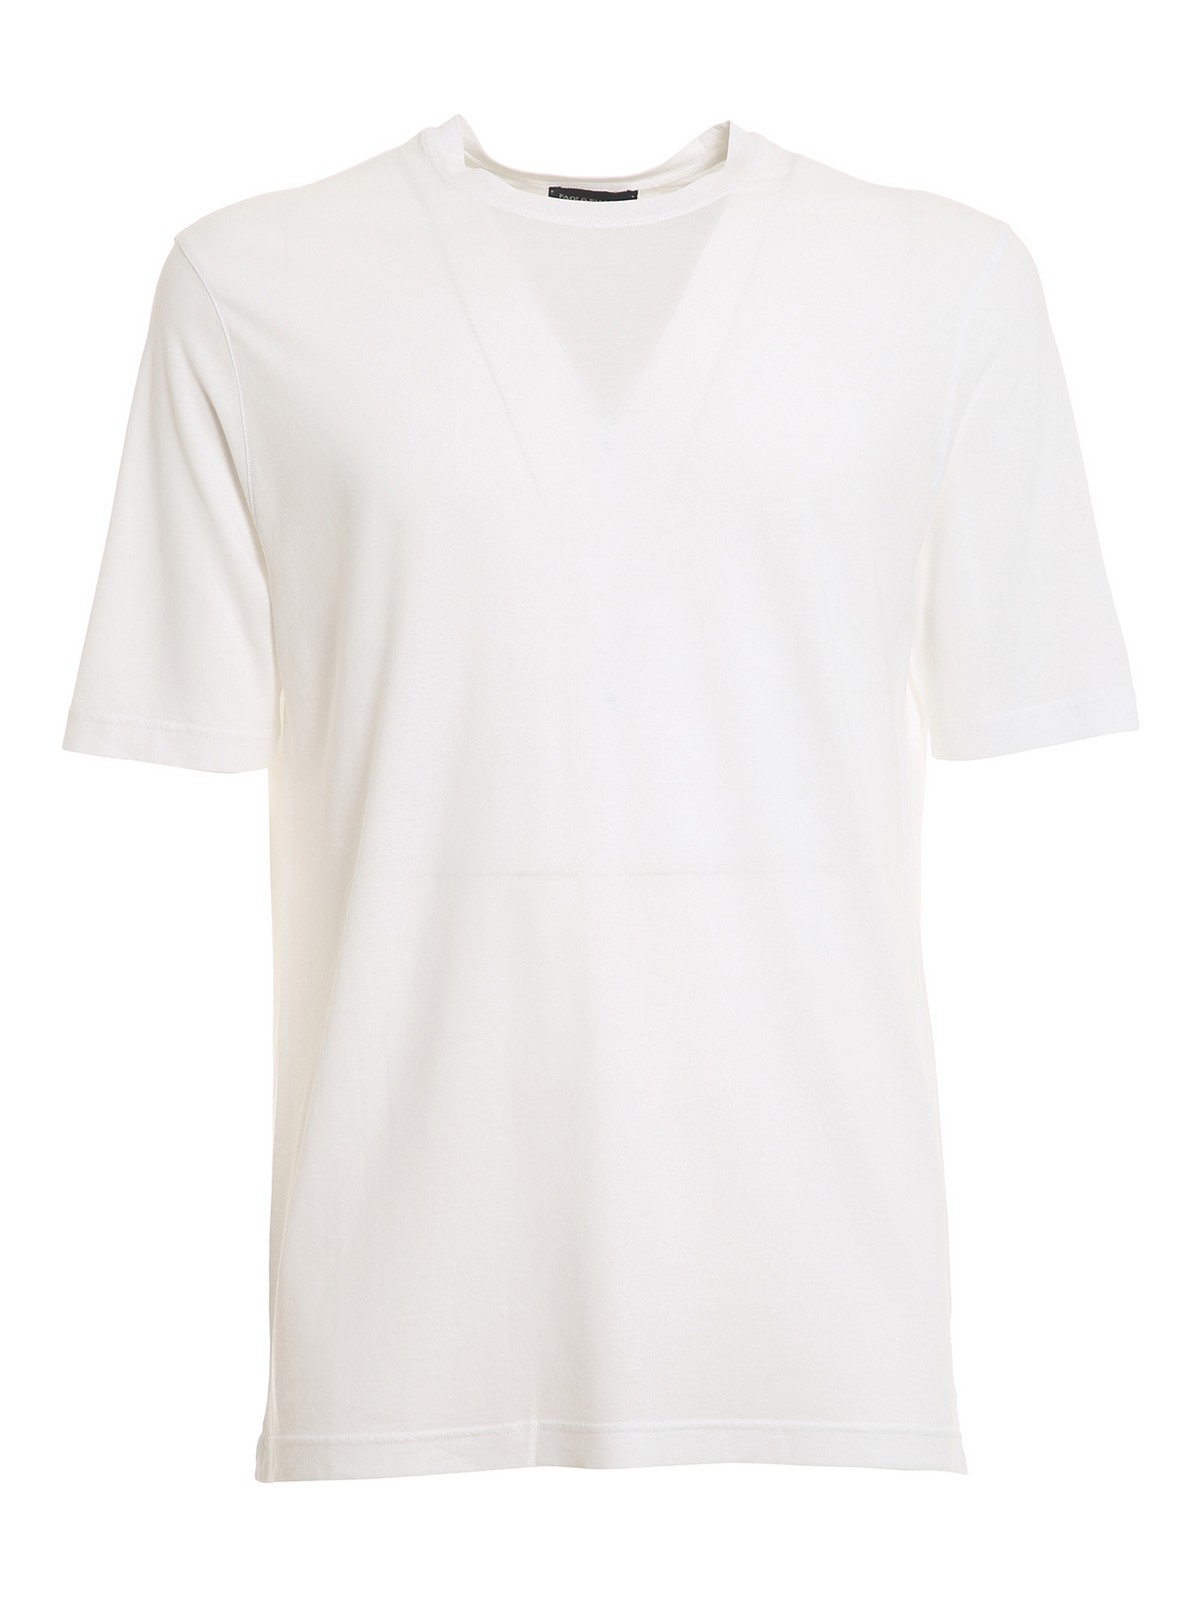 Paolo Fiorillo Cotton Crepe T-shirt In White